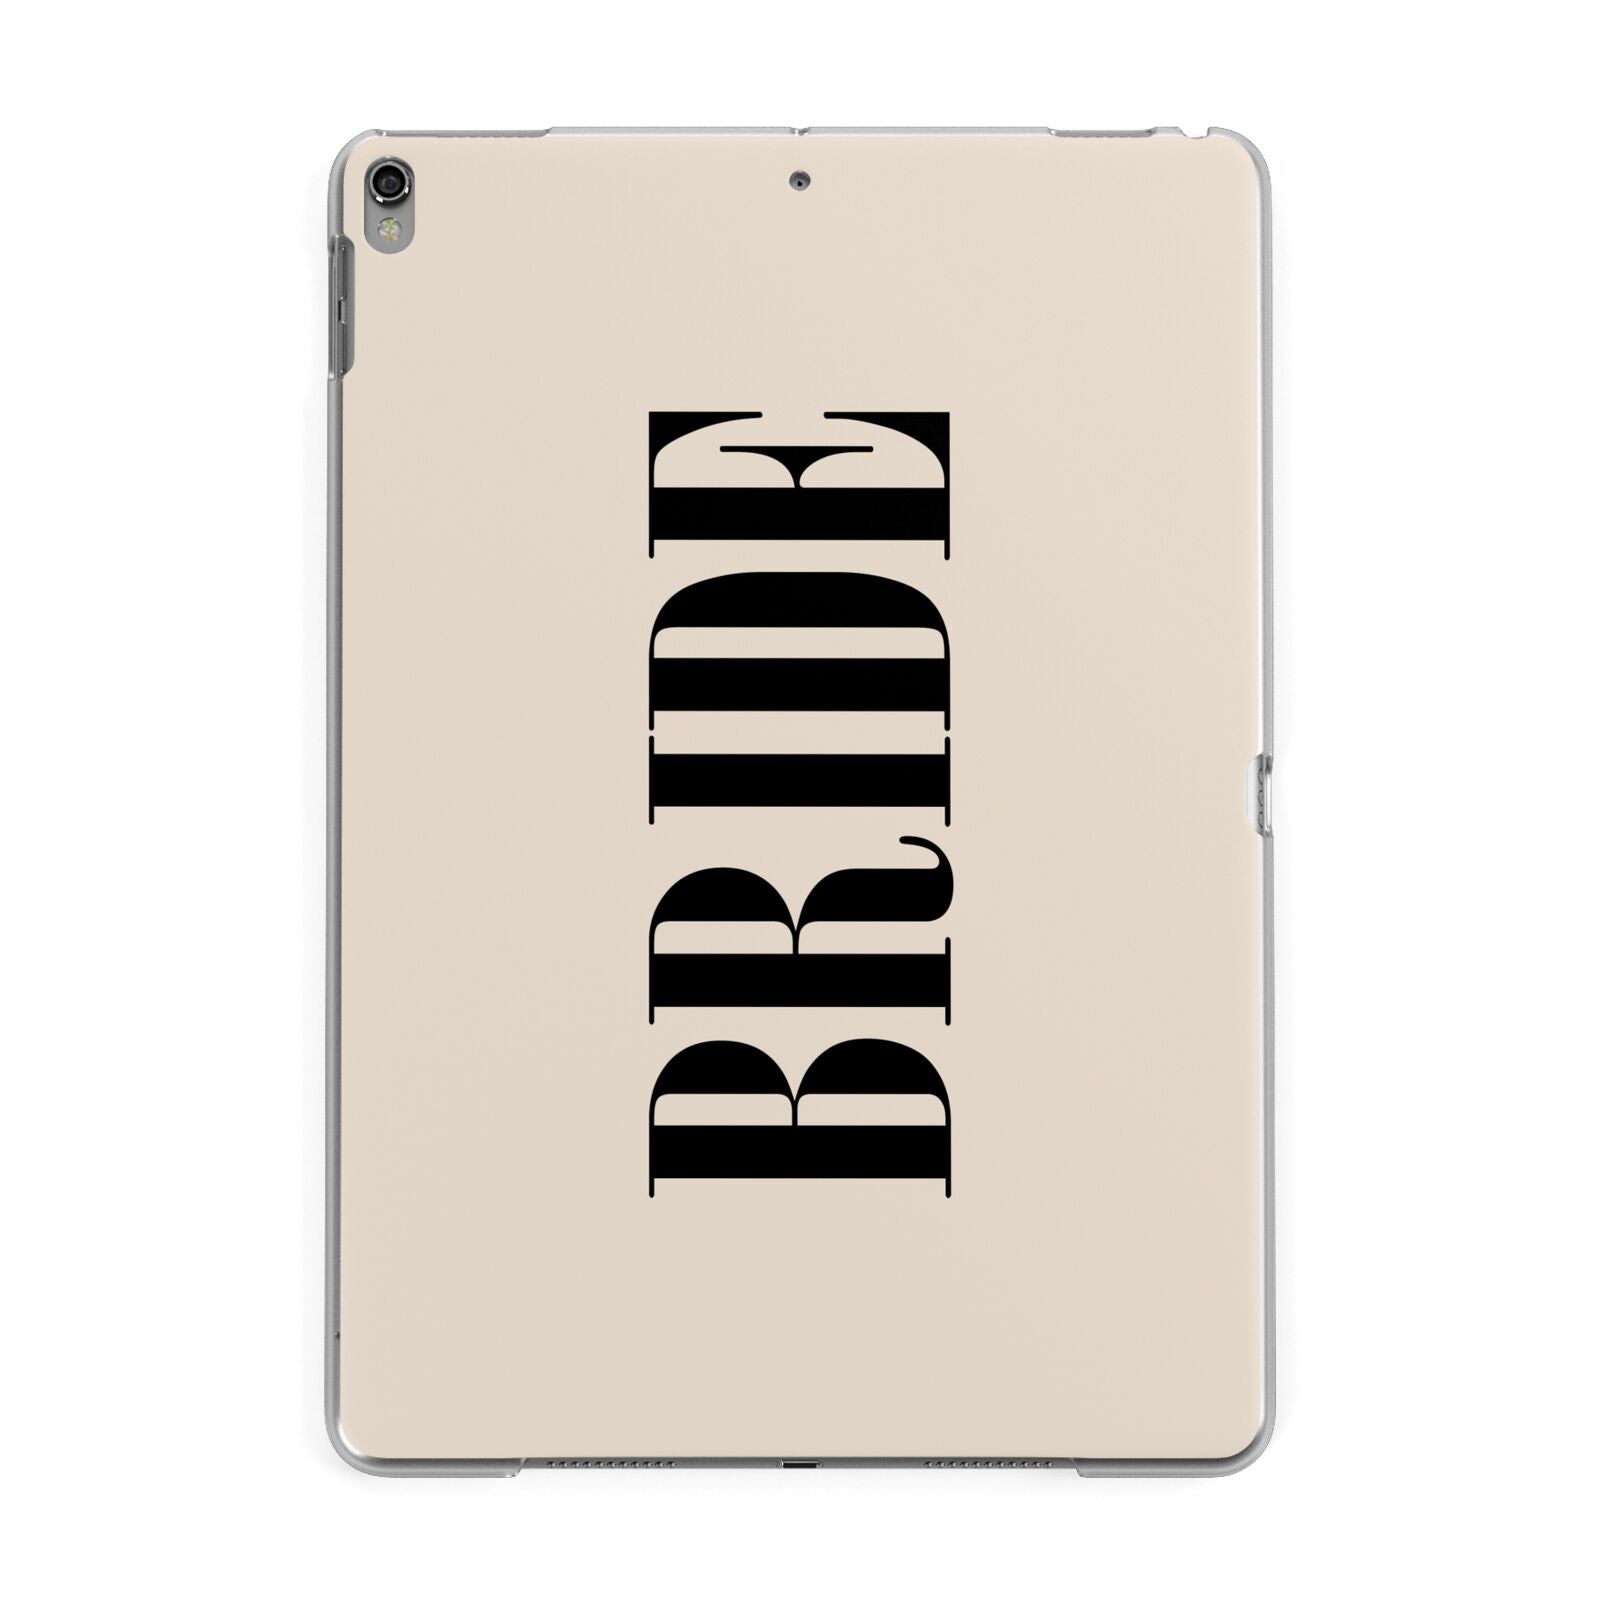 Future Bride Apple iPad Grey Case